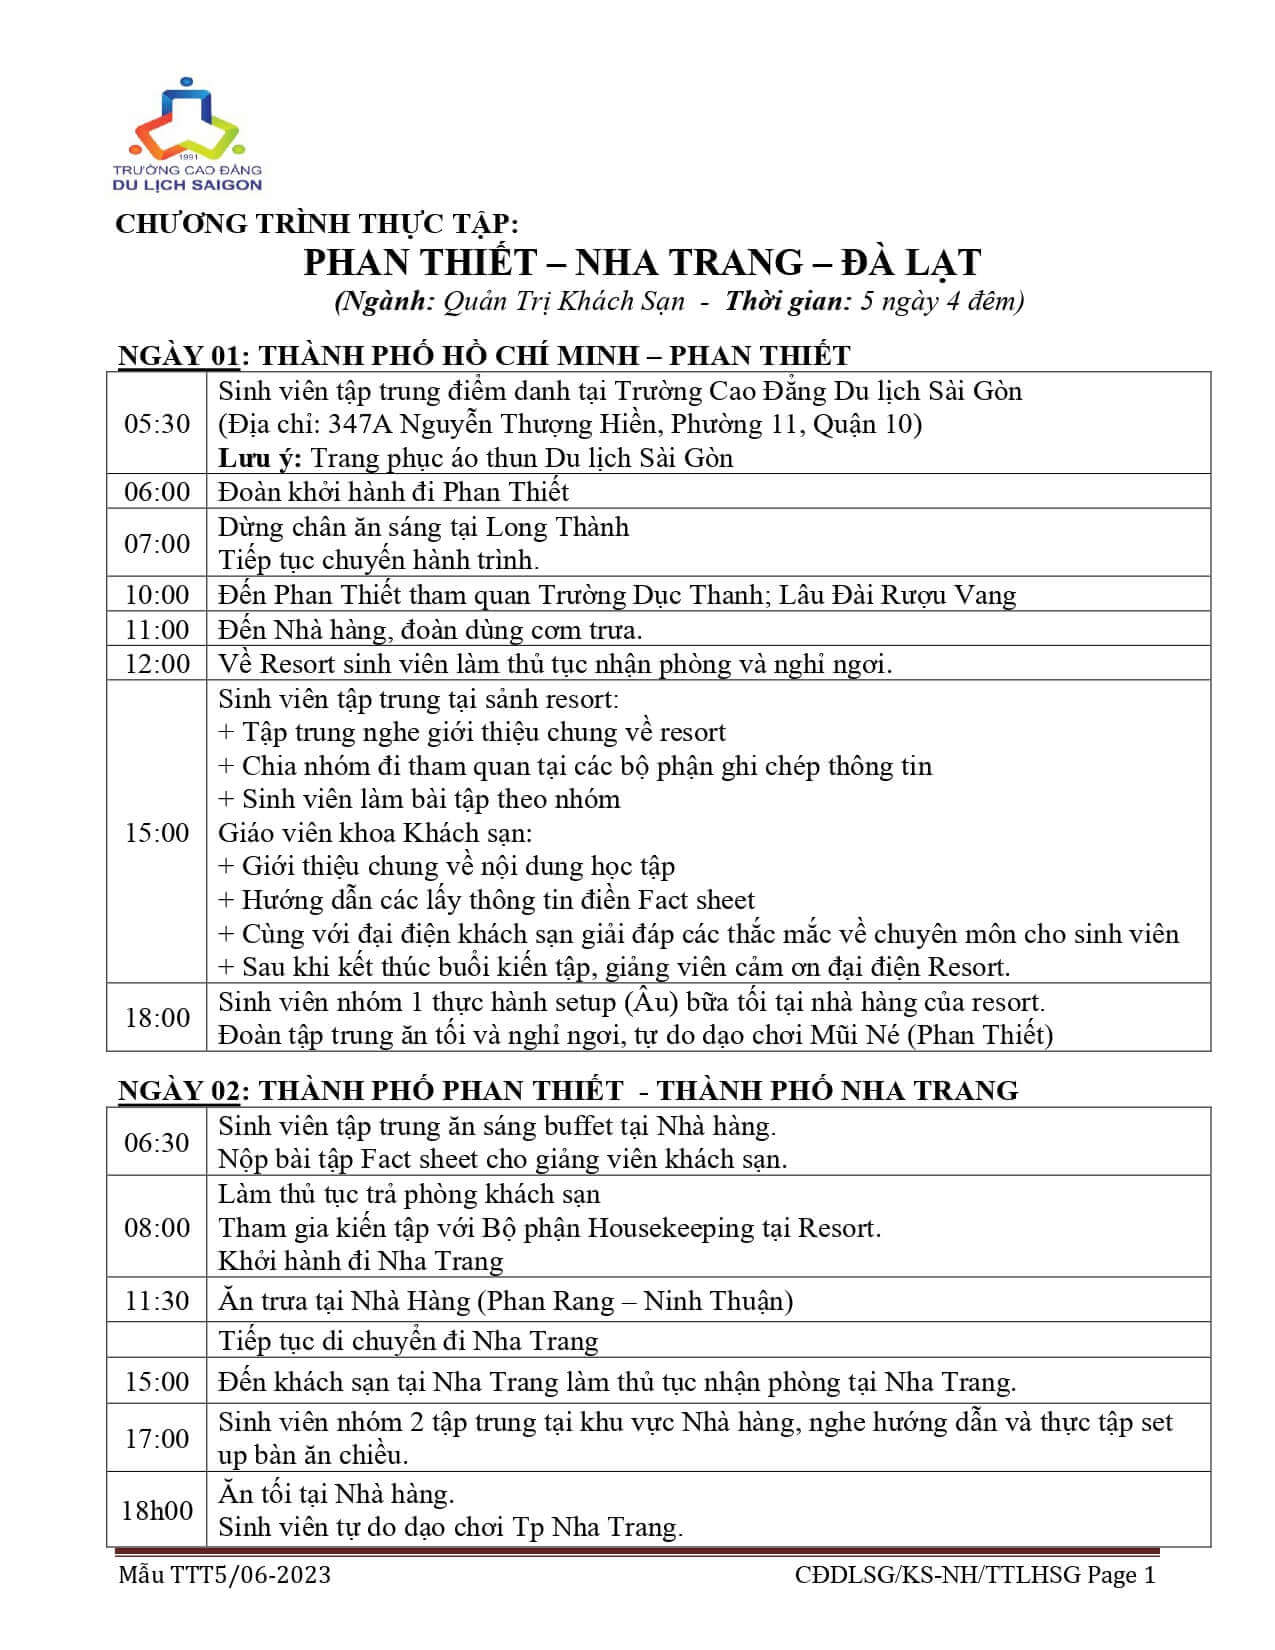 3- Chương trình Phan Thiết - Nha Trang - Đà Lạt (05 ngày 04 đêm)_page-0001